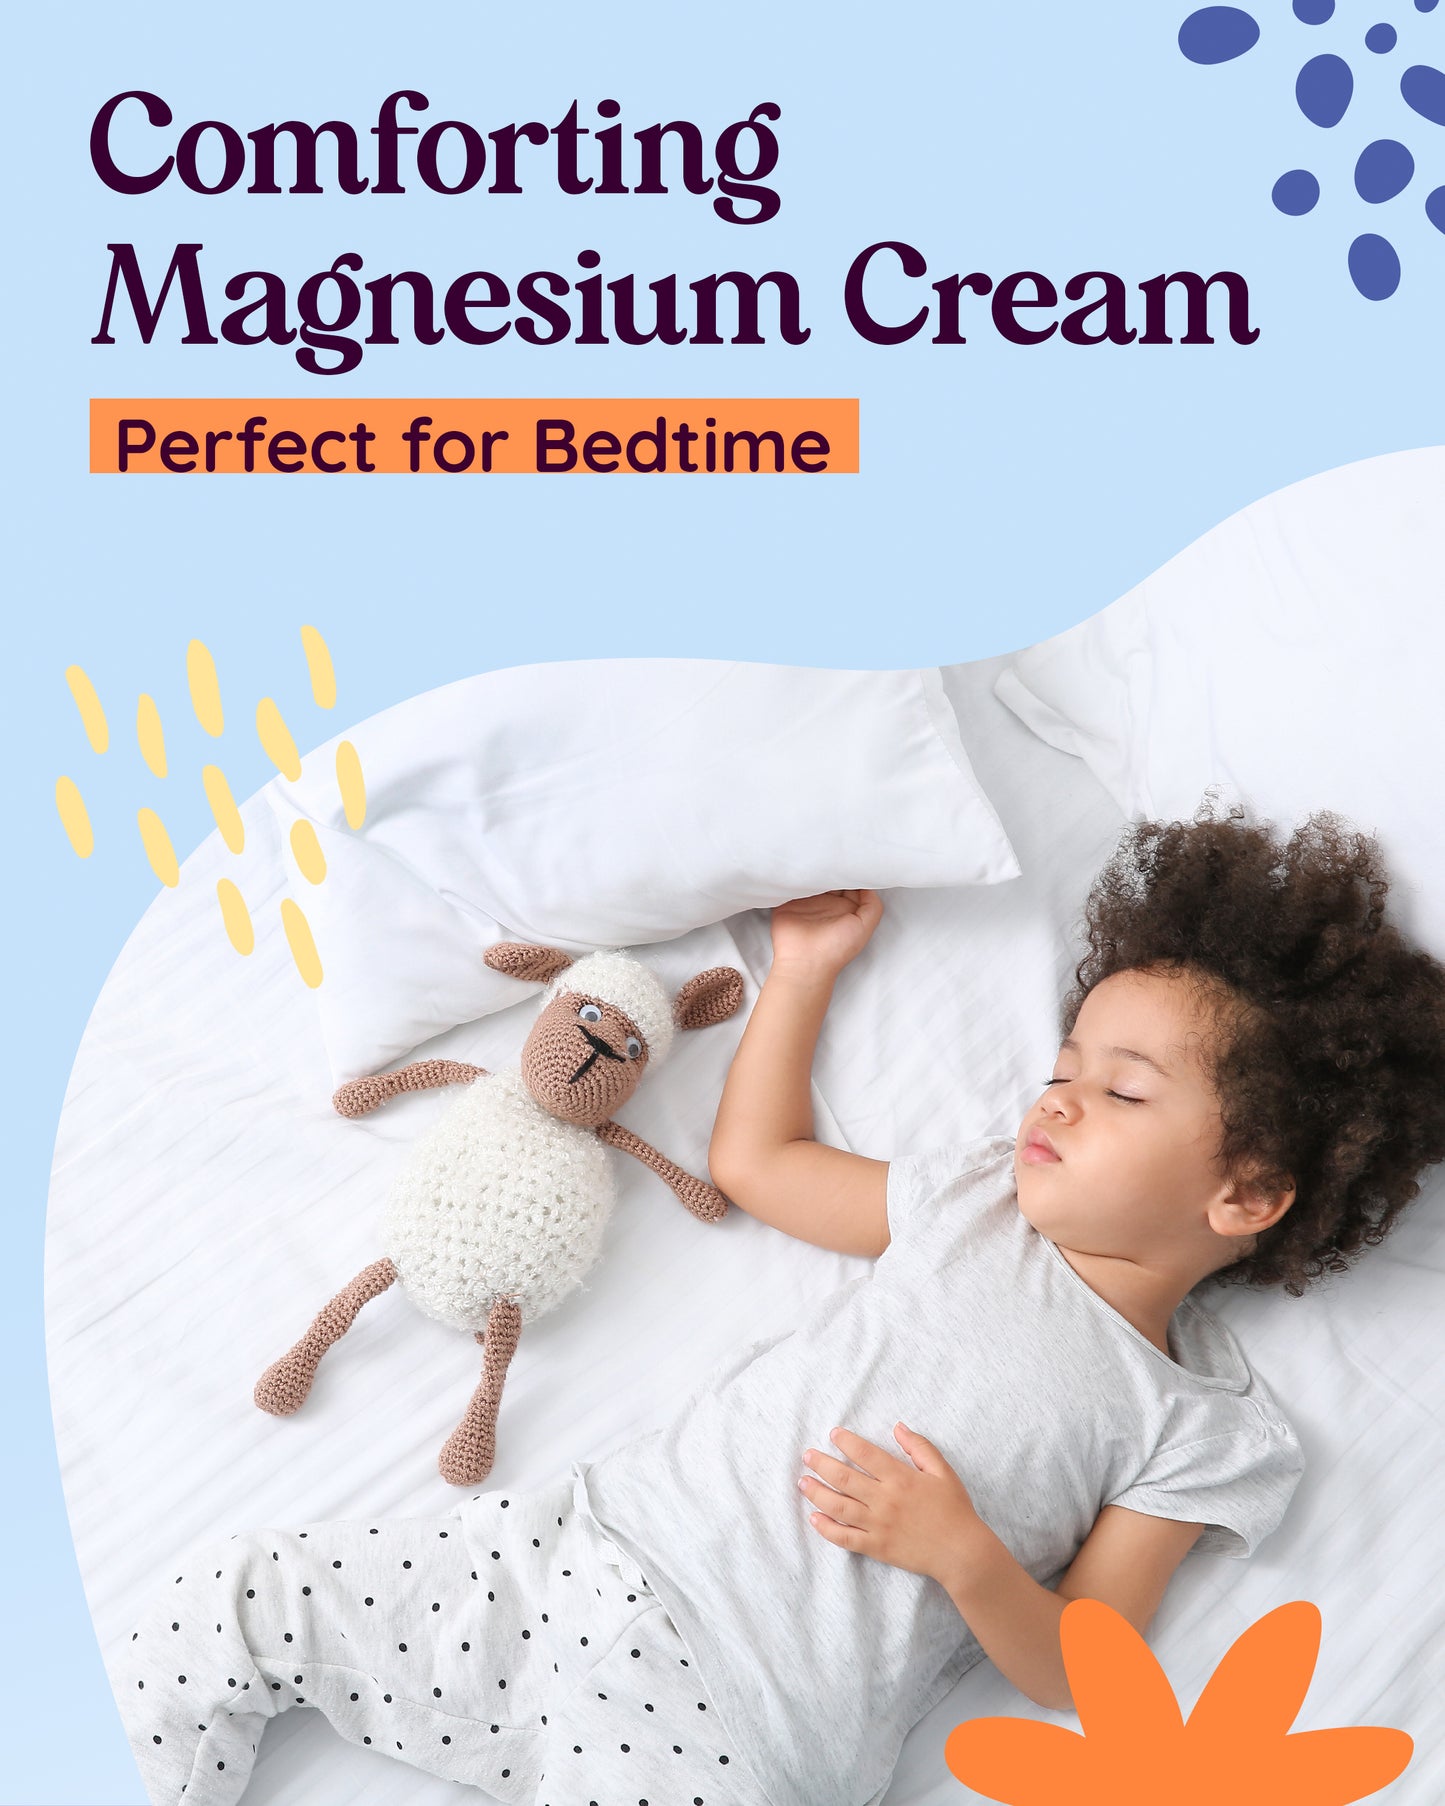 Magnesium Cream Unscented